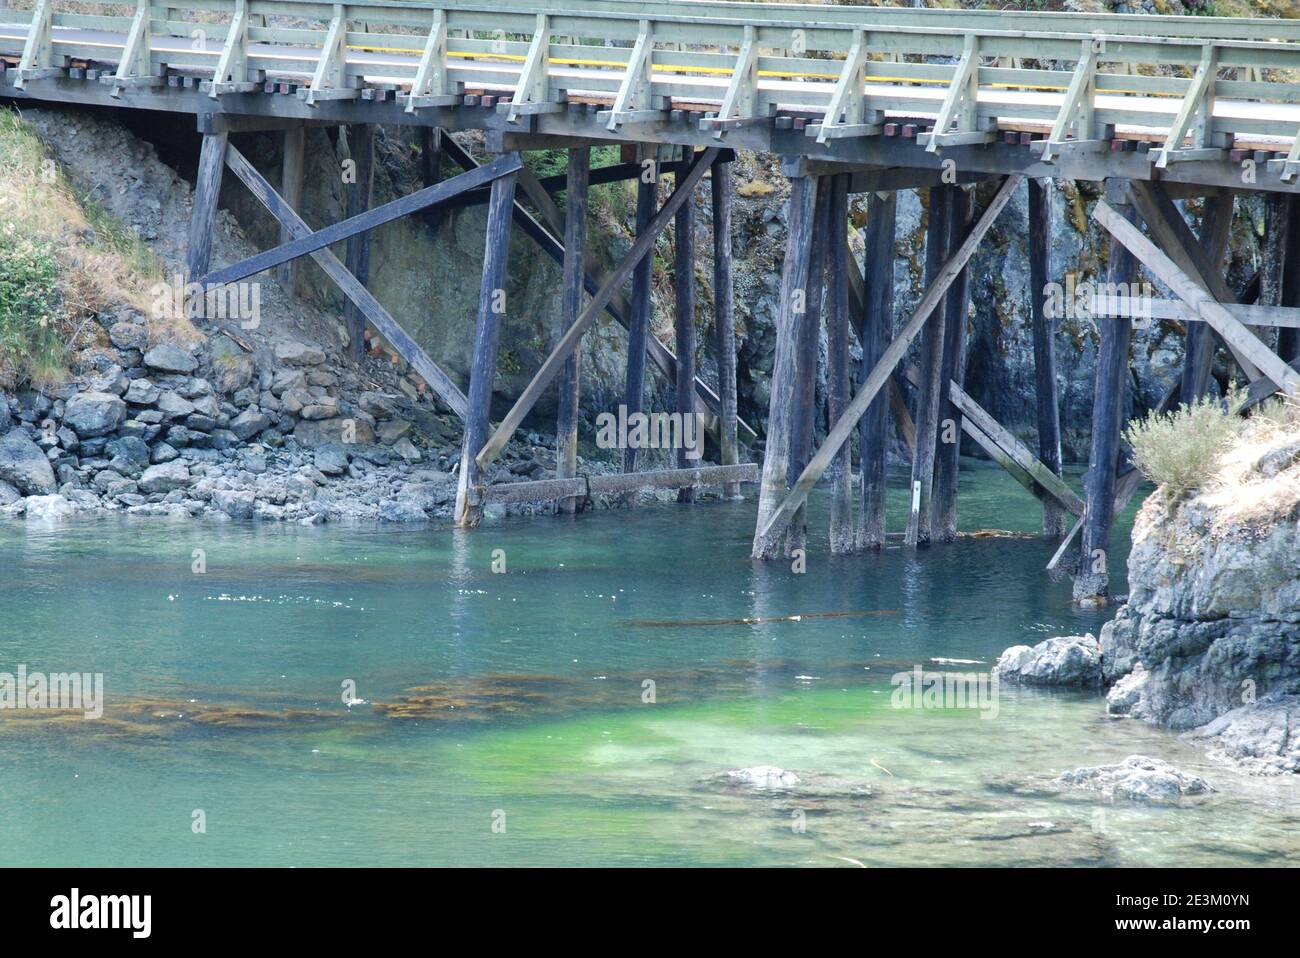 Primo piano del ponte, dove Gillespie Road corre sull'acqua al limitare del Sooke Basin sulla costa occidentale dell'isola di Vancouver, BC, Canada. Foto Stock